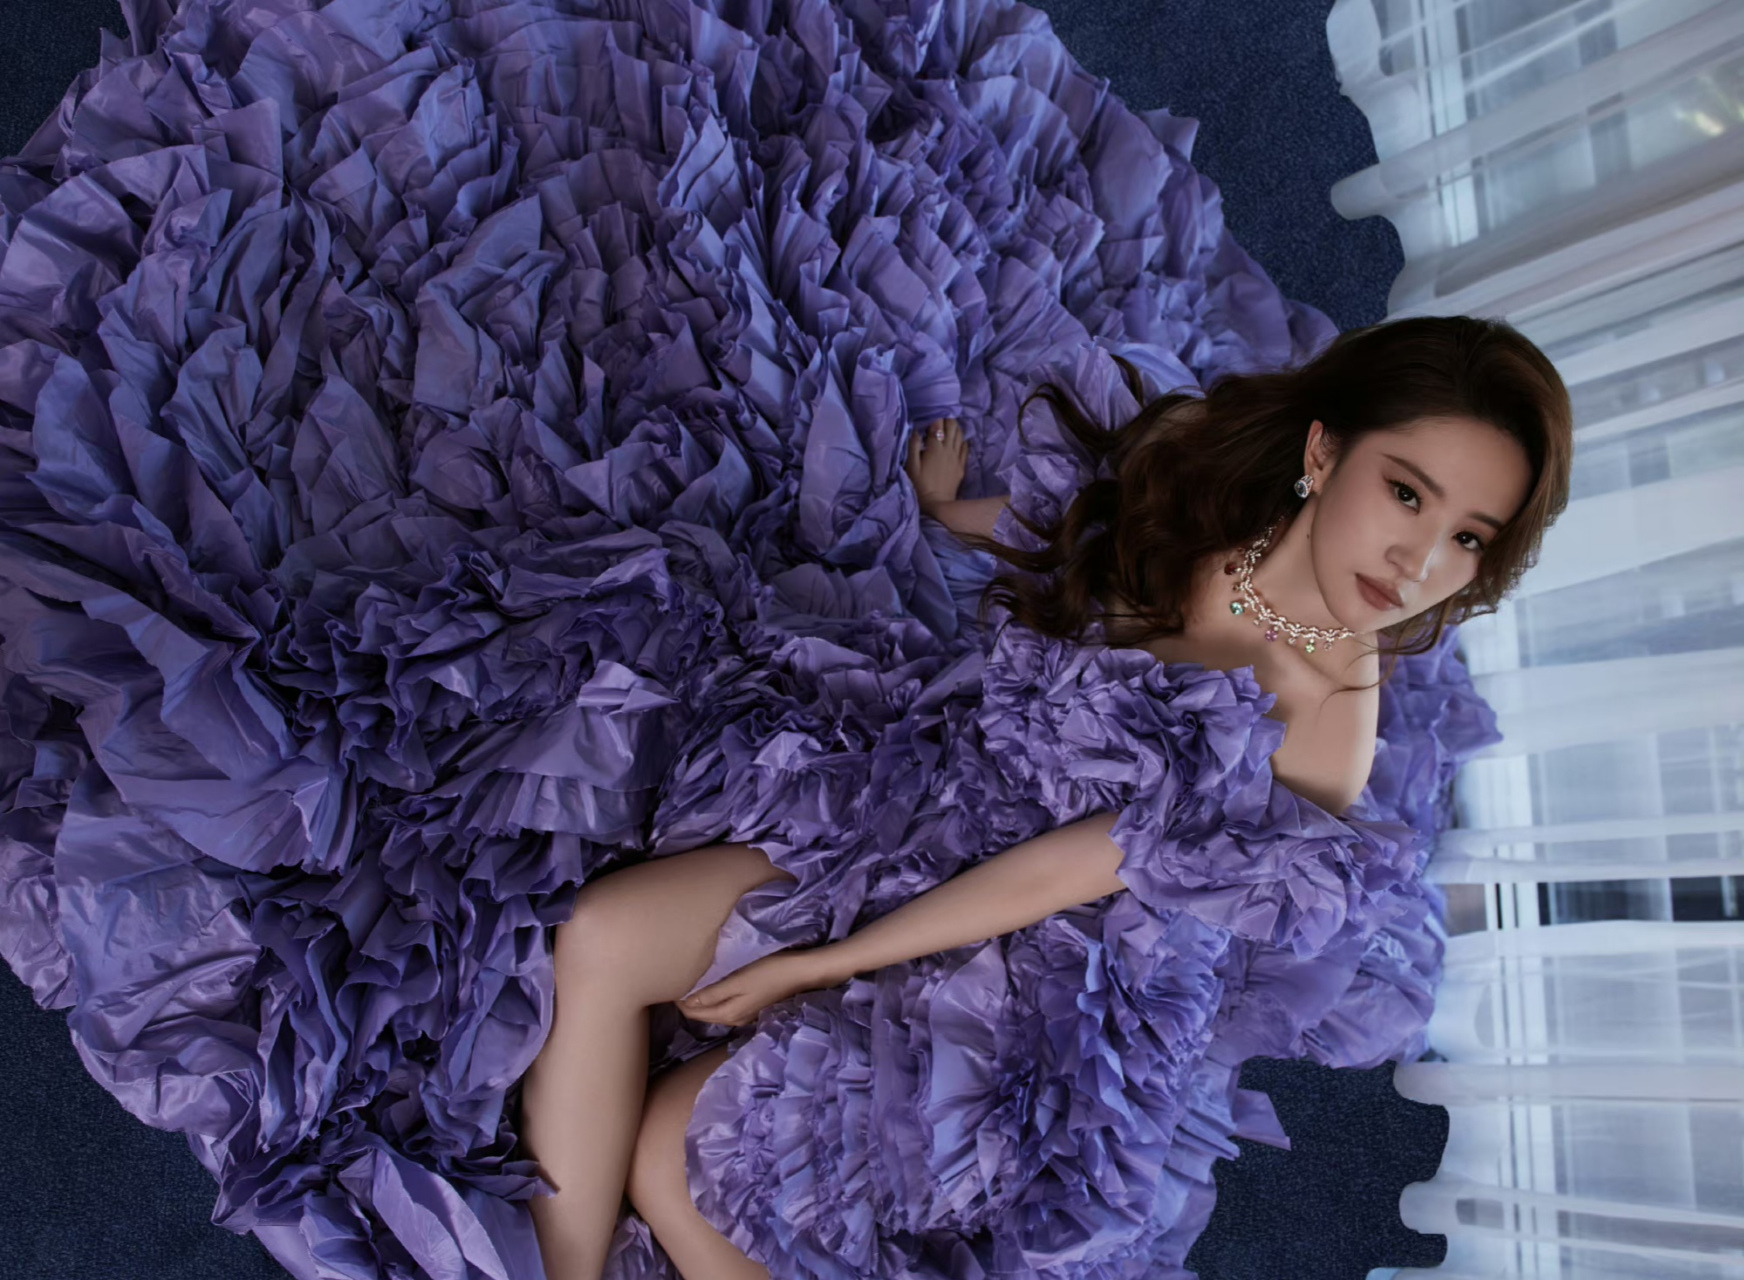 刘亦菲今日份出席星愿首映礼身着紫色大裙摆梦幻礼服裙,优雅高贵范